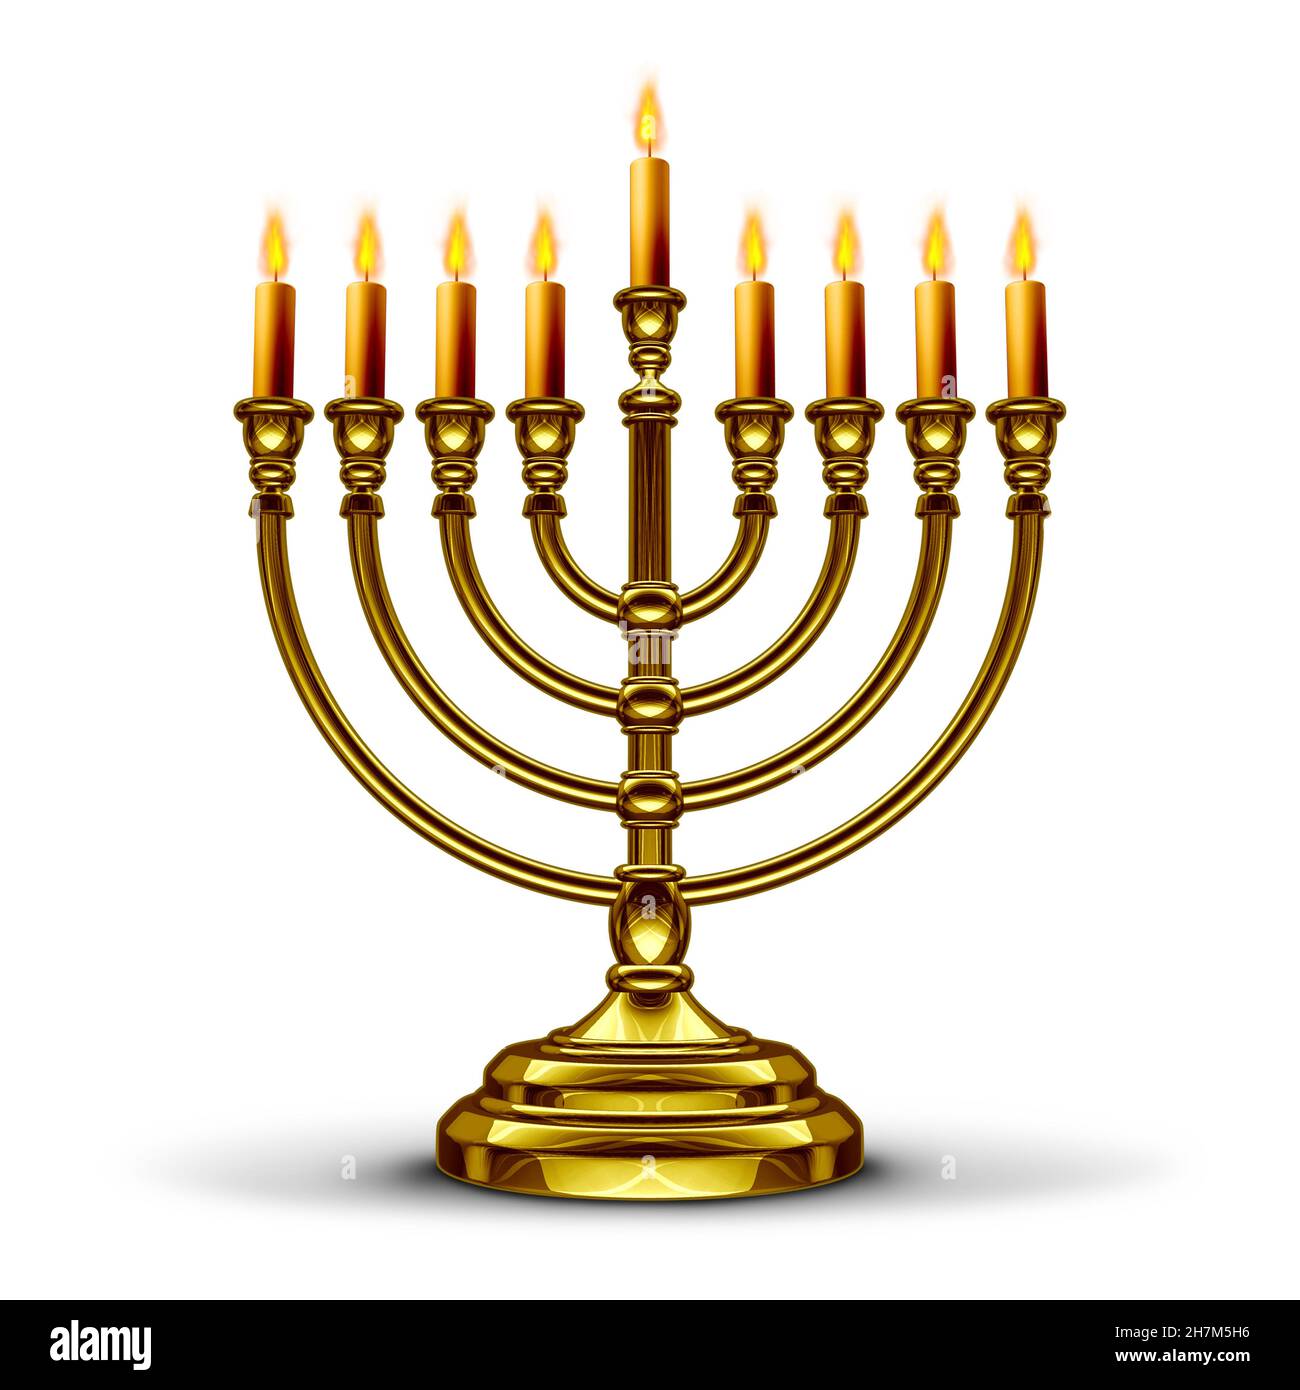 Hanukkah-Menorah-Symbol oder Chanukka-Kerzenständer mit angezündeten Kerzen als saisonales traditionelles Glaubenssymbol auf weißem Hintergrund als Illustration aus dem Jahr 3D. Stockfoto